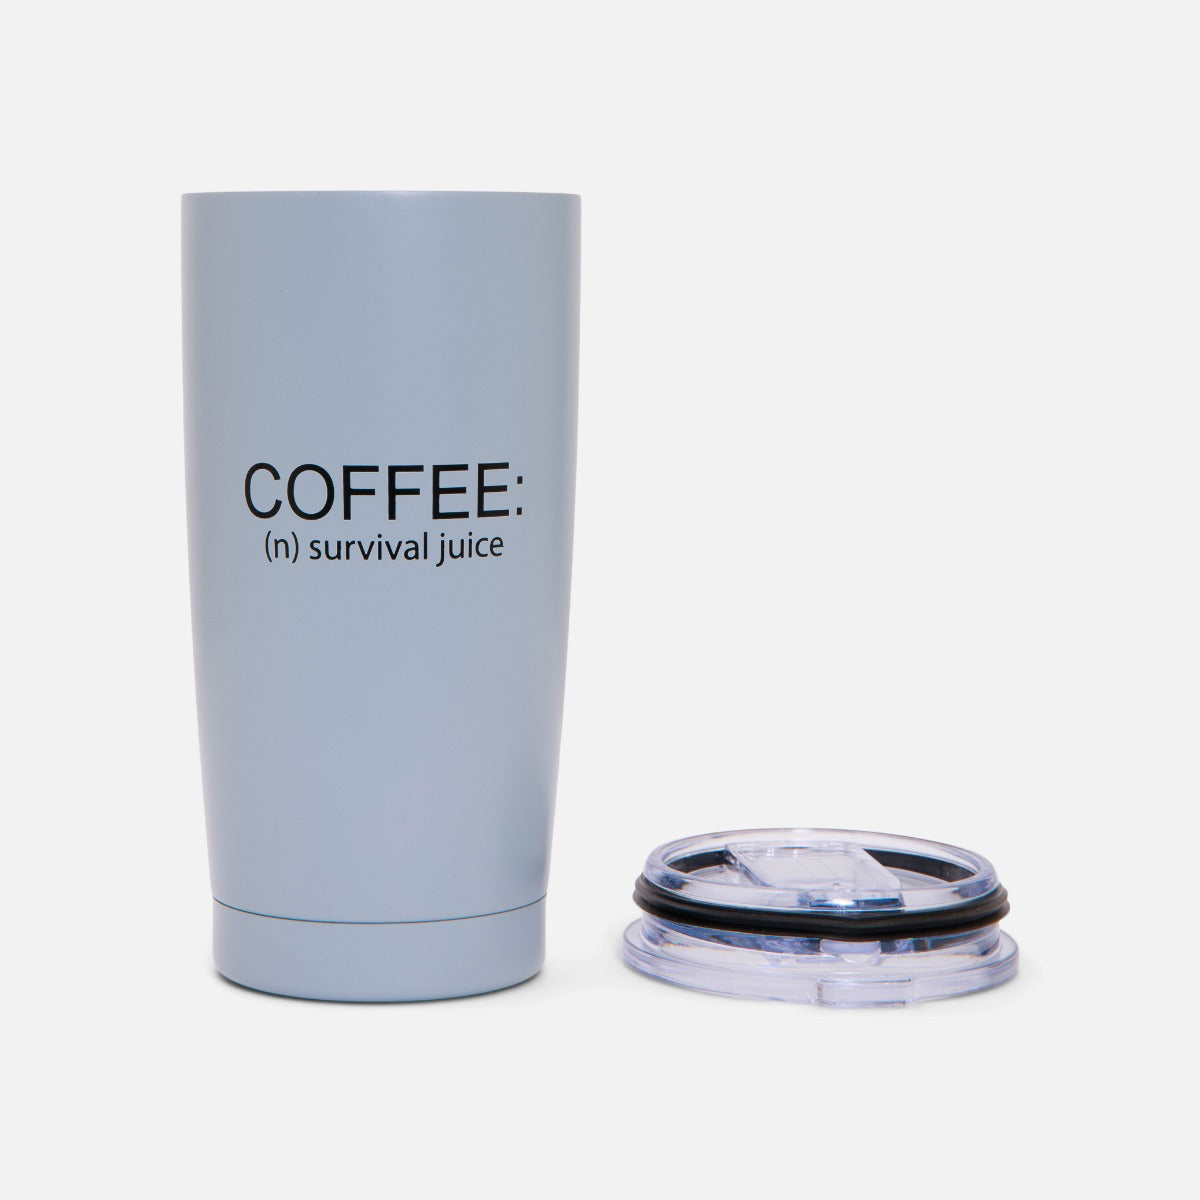 Tasse de voyage rigide bleu avec inscription « coffee : survival juice »